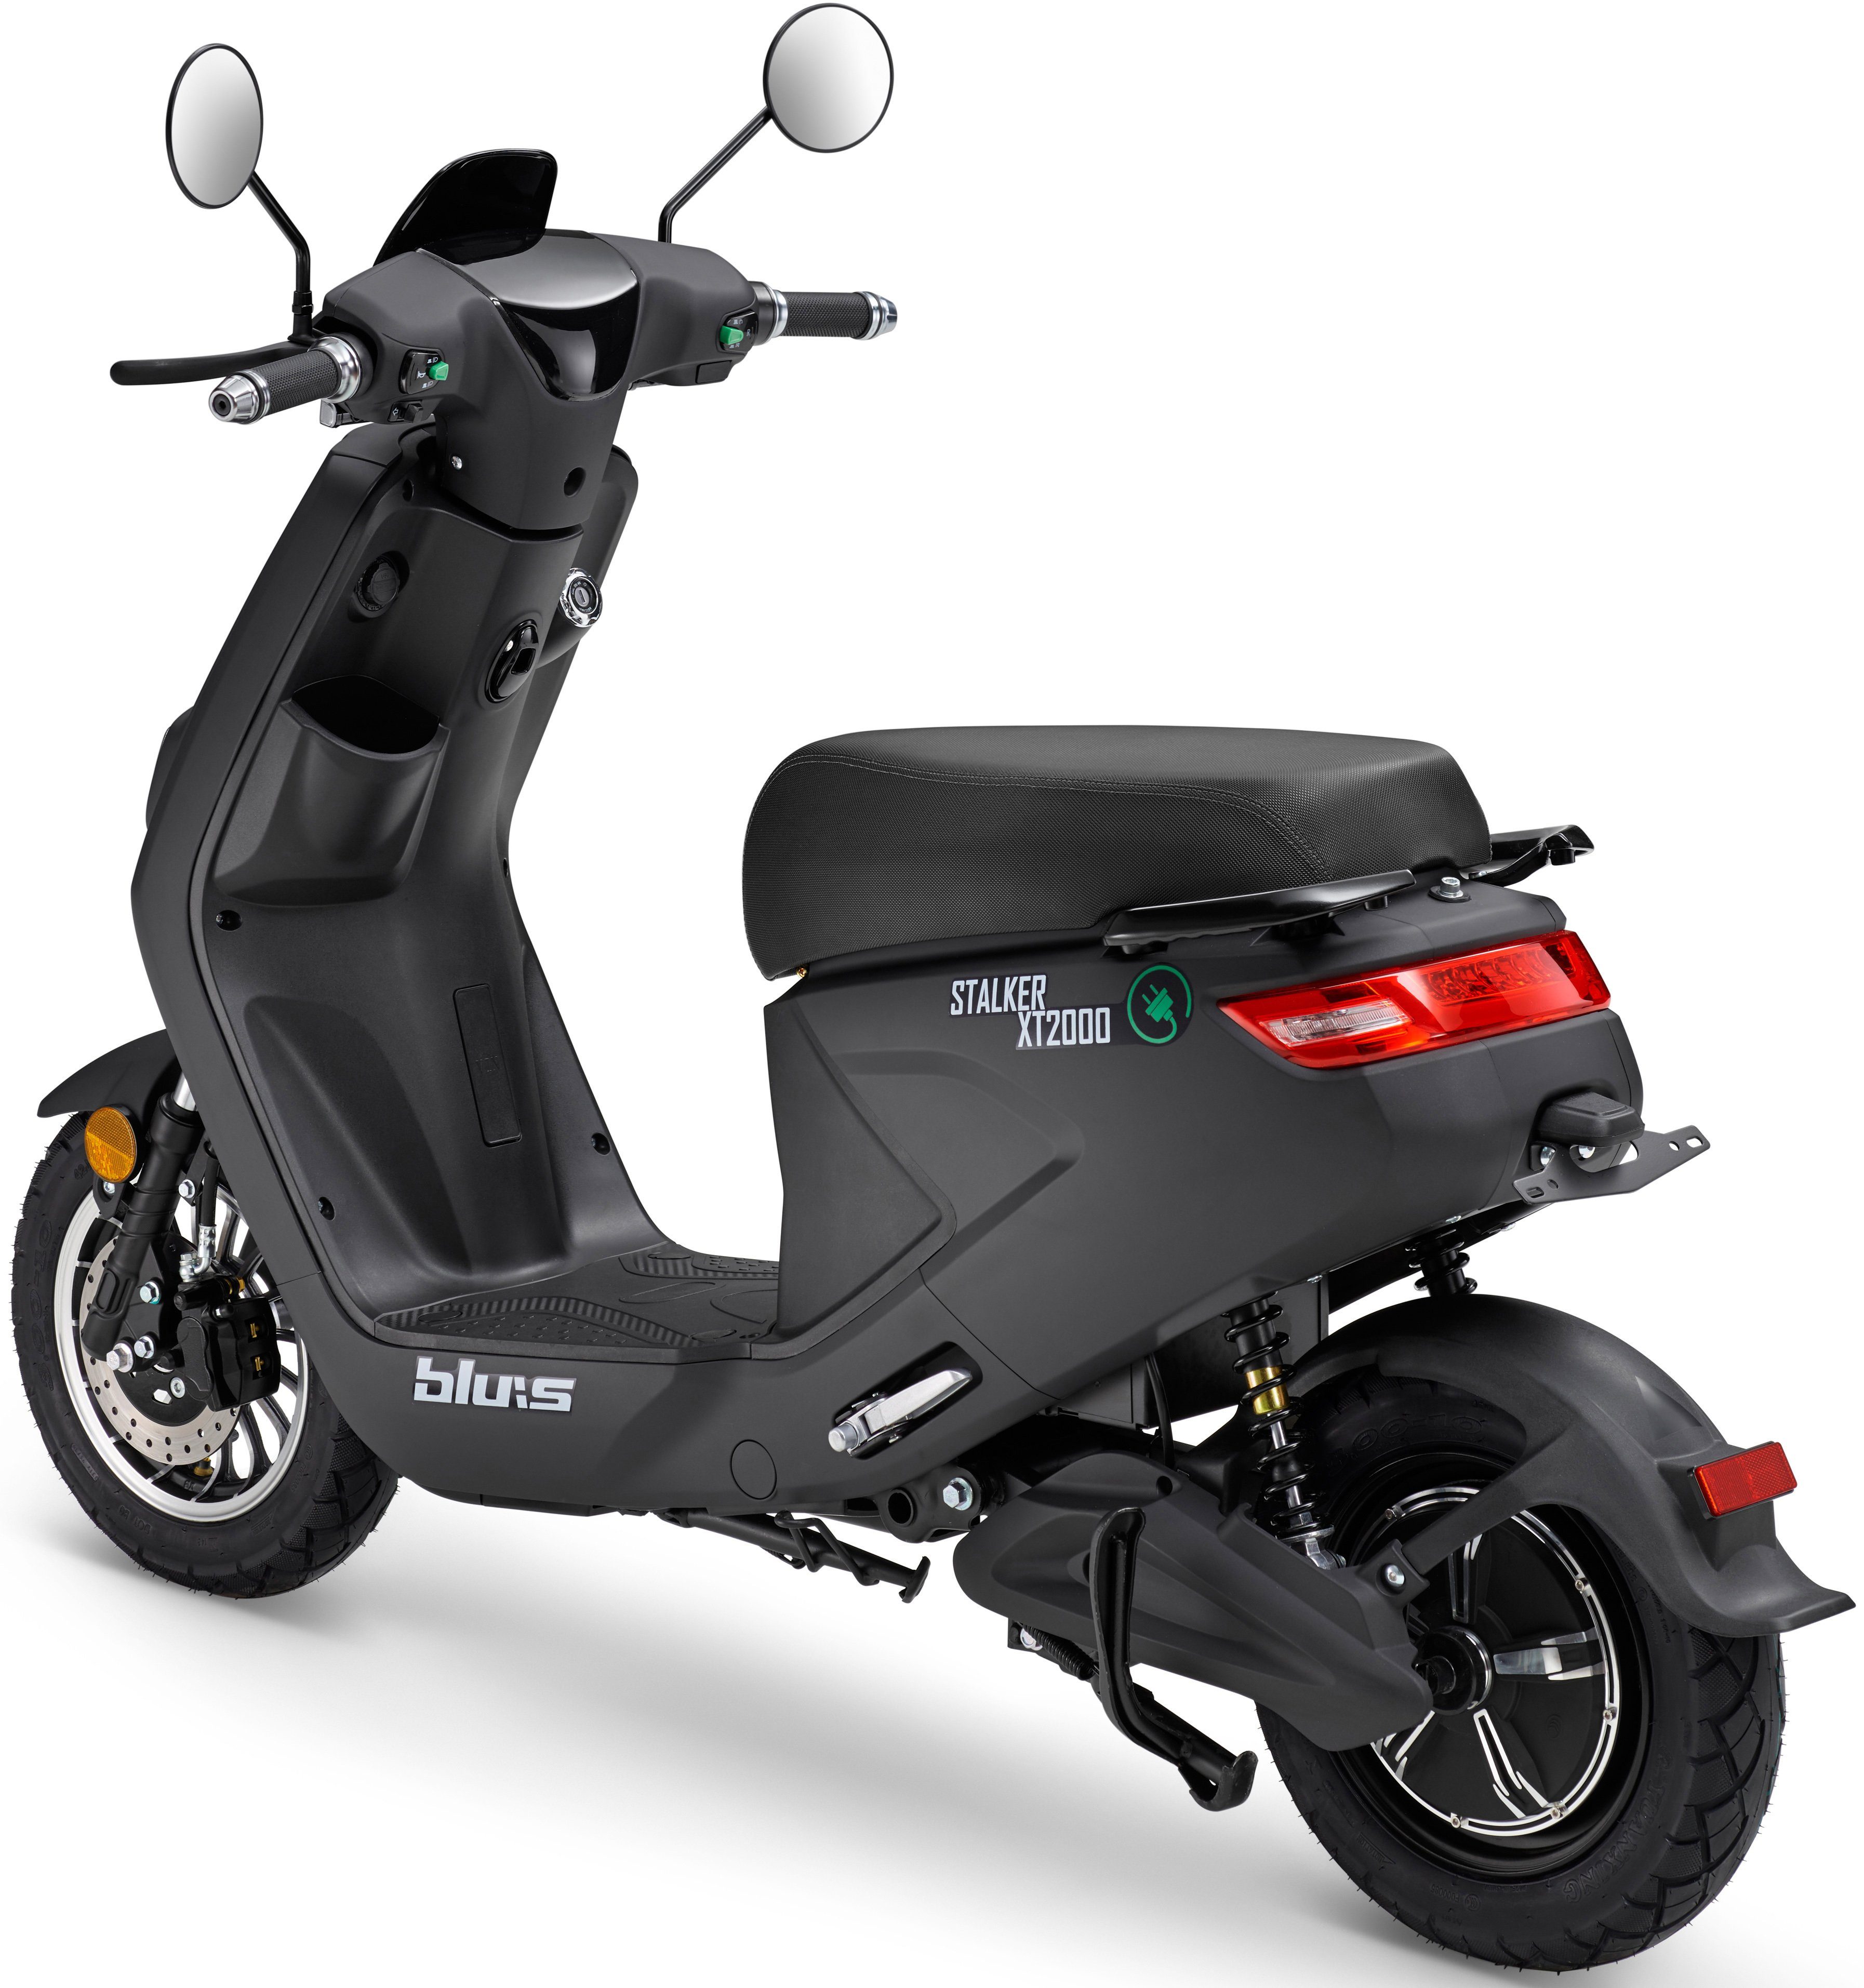 schwarz 45 2000 km/h W, XT2000, Blu:s E-Motorroller